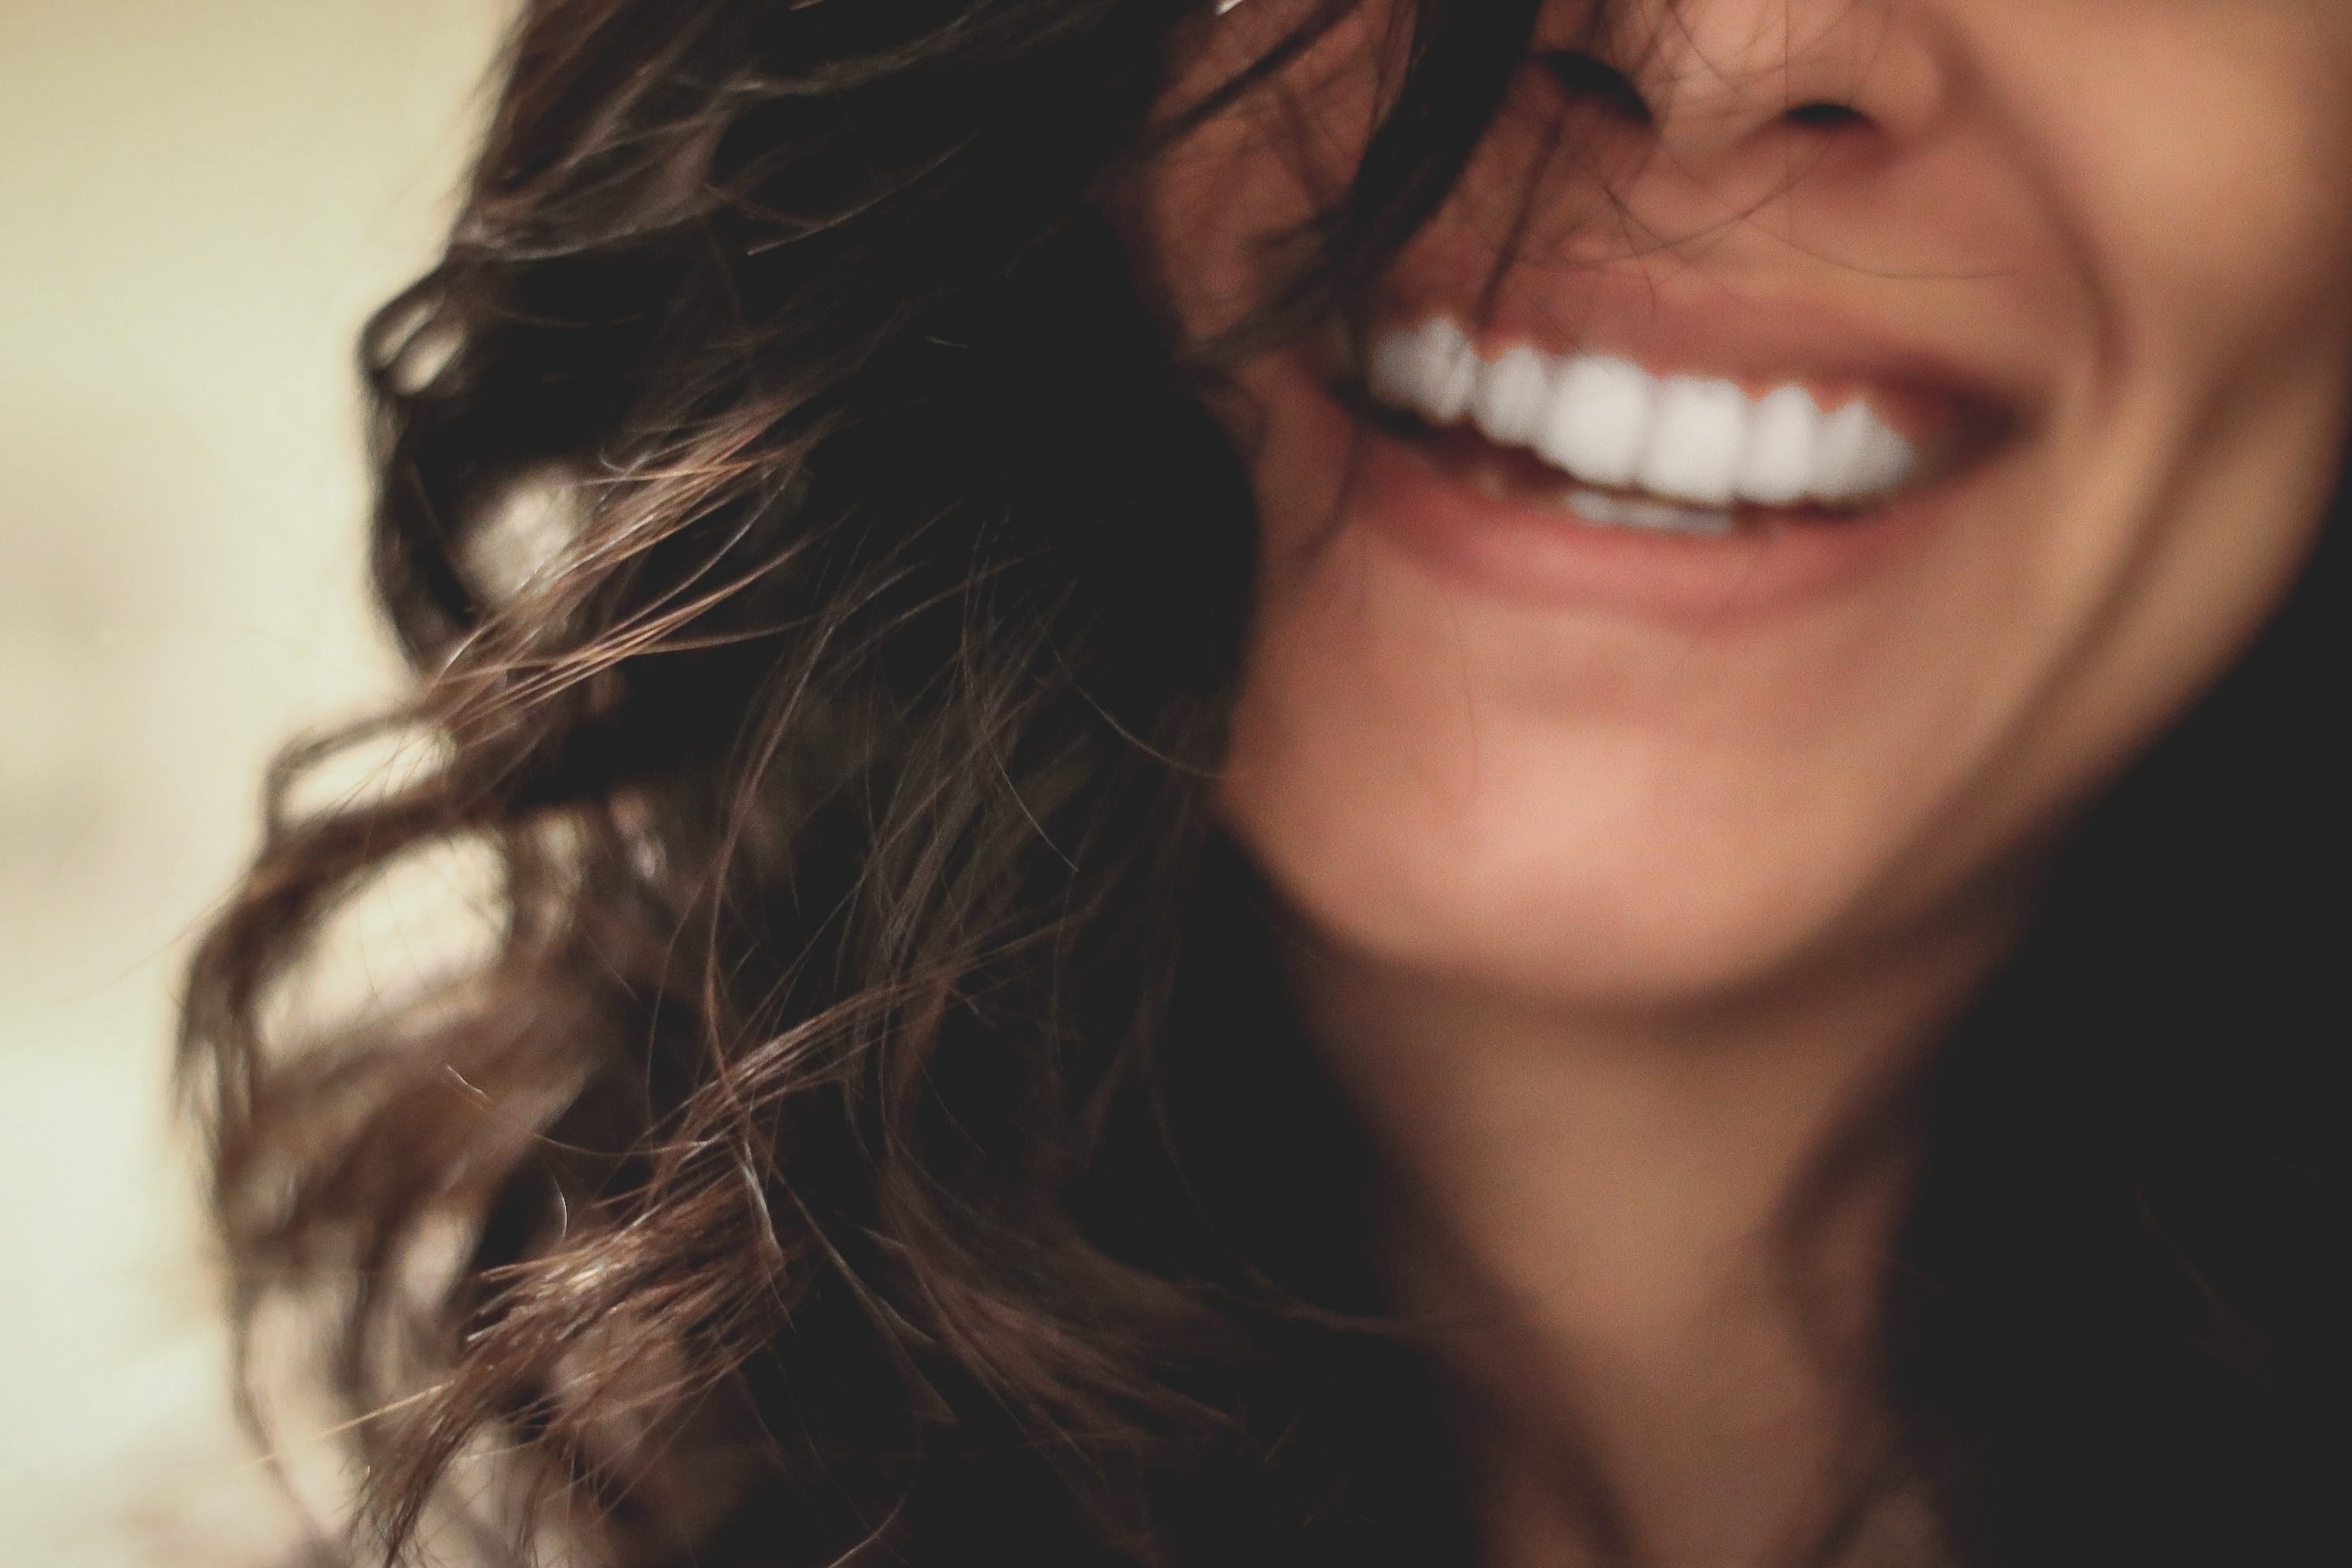 Woman smiling close-up photography; image by Lesly Juarez, via Unsplash.com.